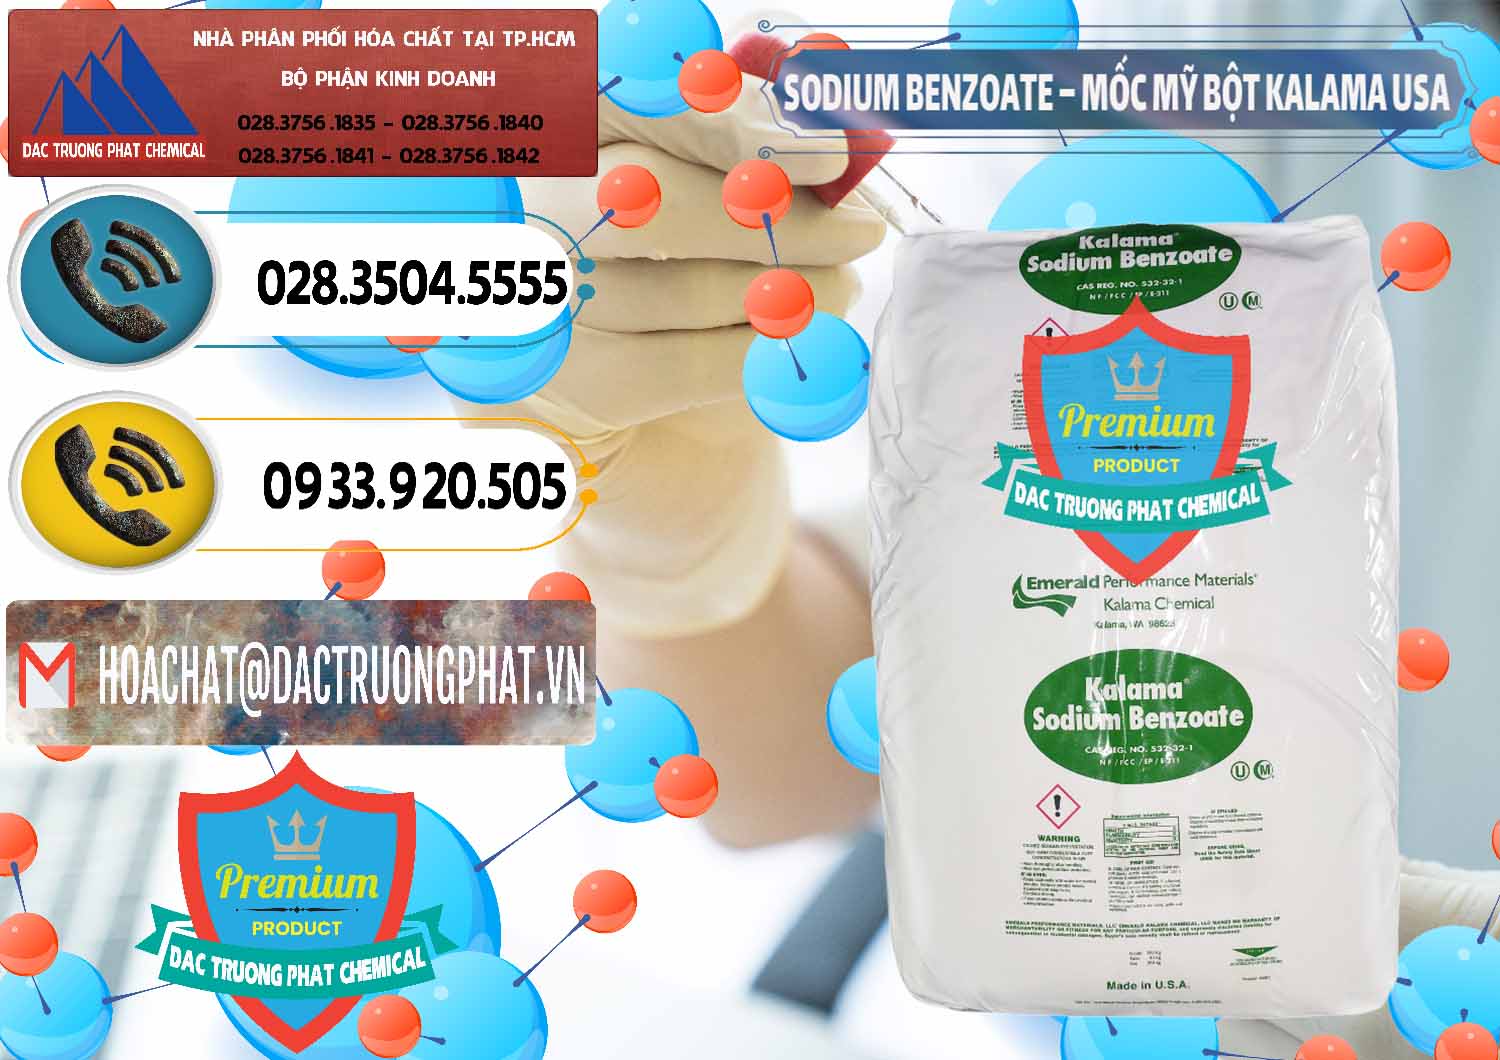 Cty kinh doanh & bán Sodium Benzoate - Mốc Bột Kalama Food Grade Mỹ Usa - 0136 - Nhập khẩu & phân phối hóa chất tại TP.HCM - hoachatdetnhuom.vn